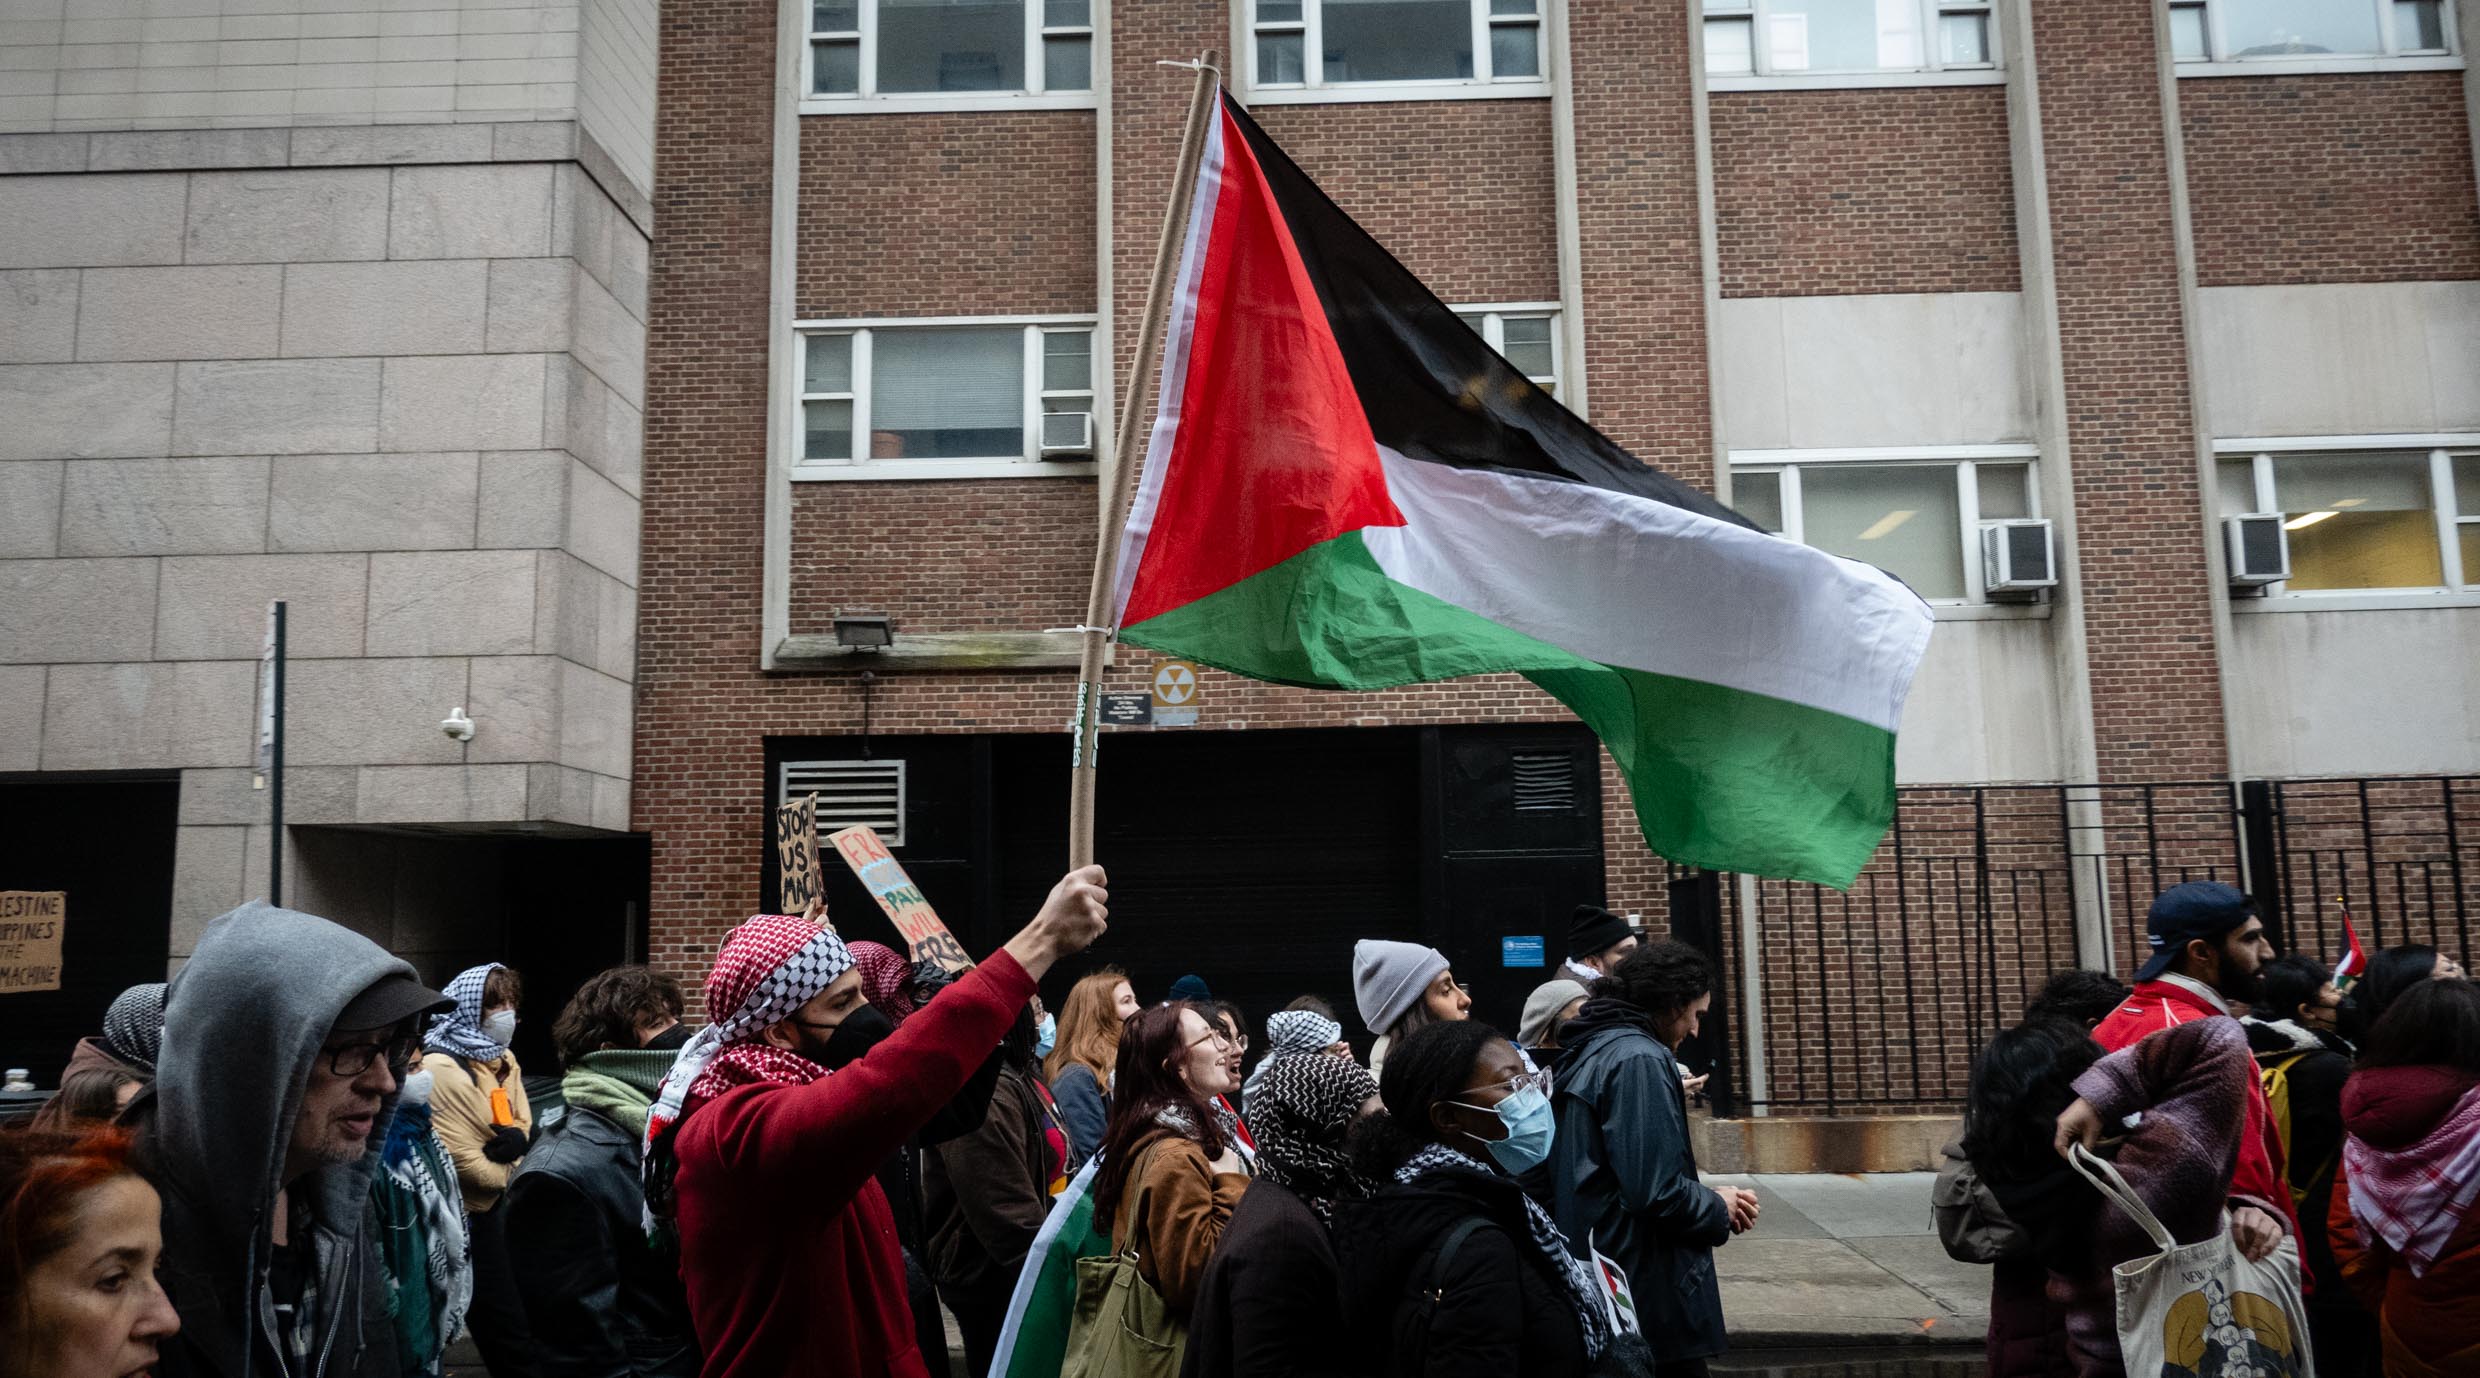 מפגינים פרו-פלסטינים כופים את סגירתו של המוזיאון לאמנות מודרנית